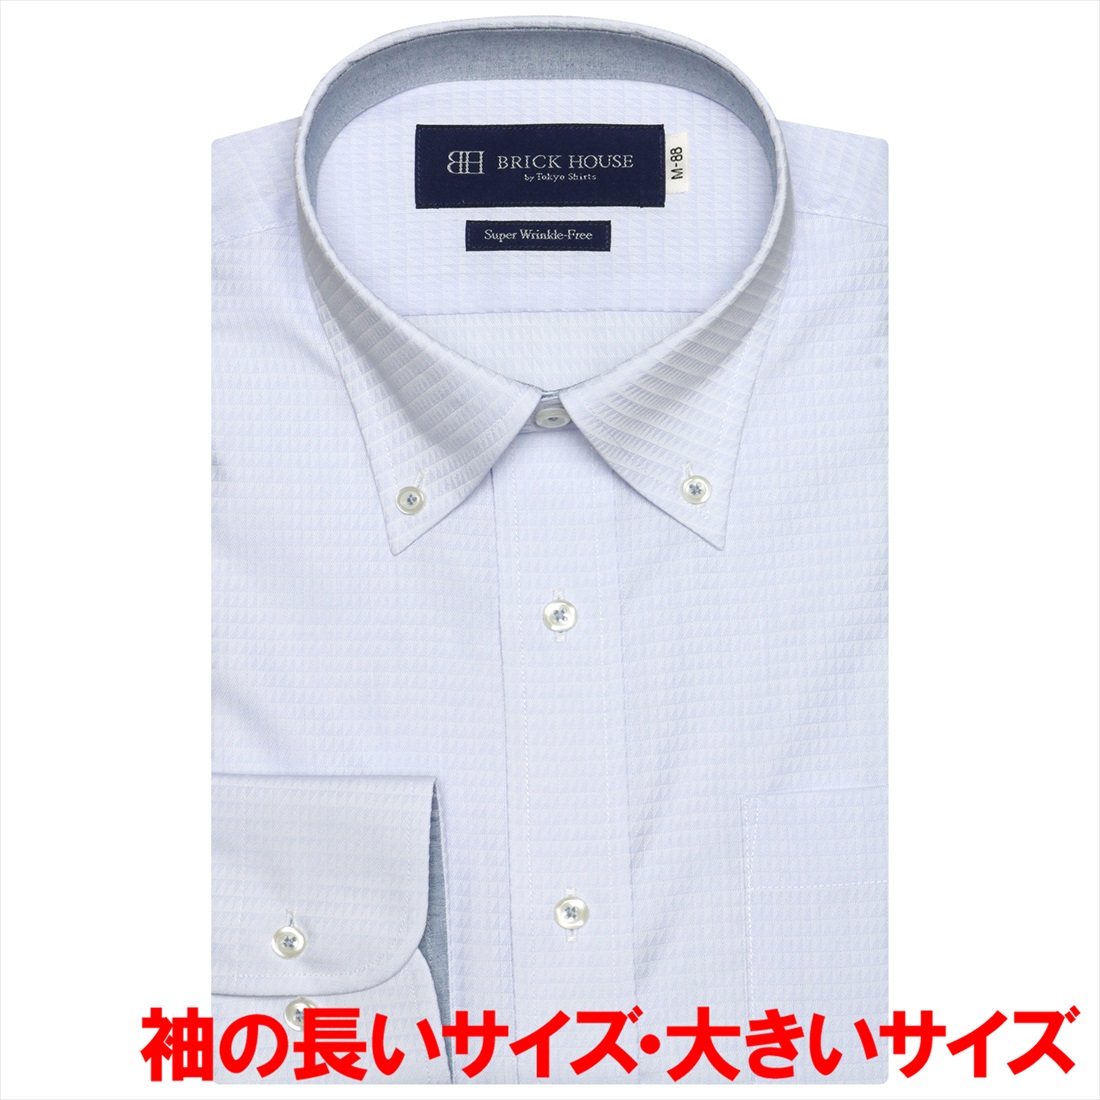 【ピンク】(M)【超形態安定】 ボタンダウンカラー 長袖 ワイシャツ